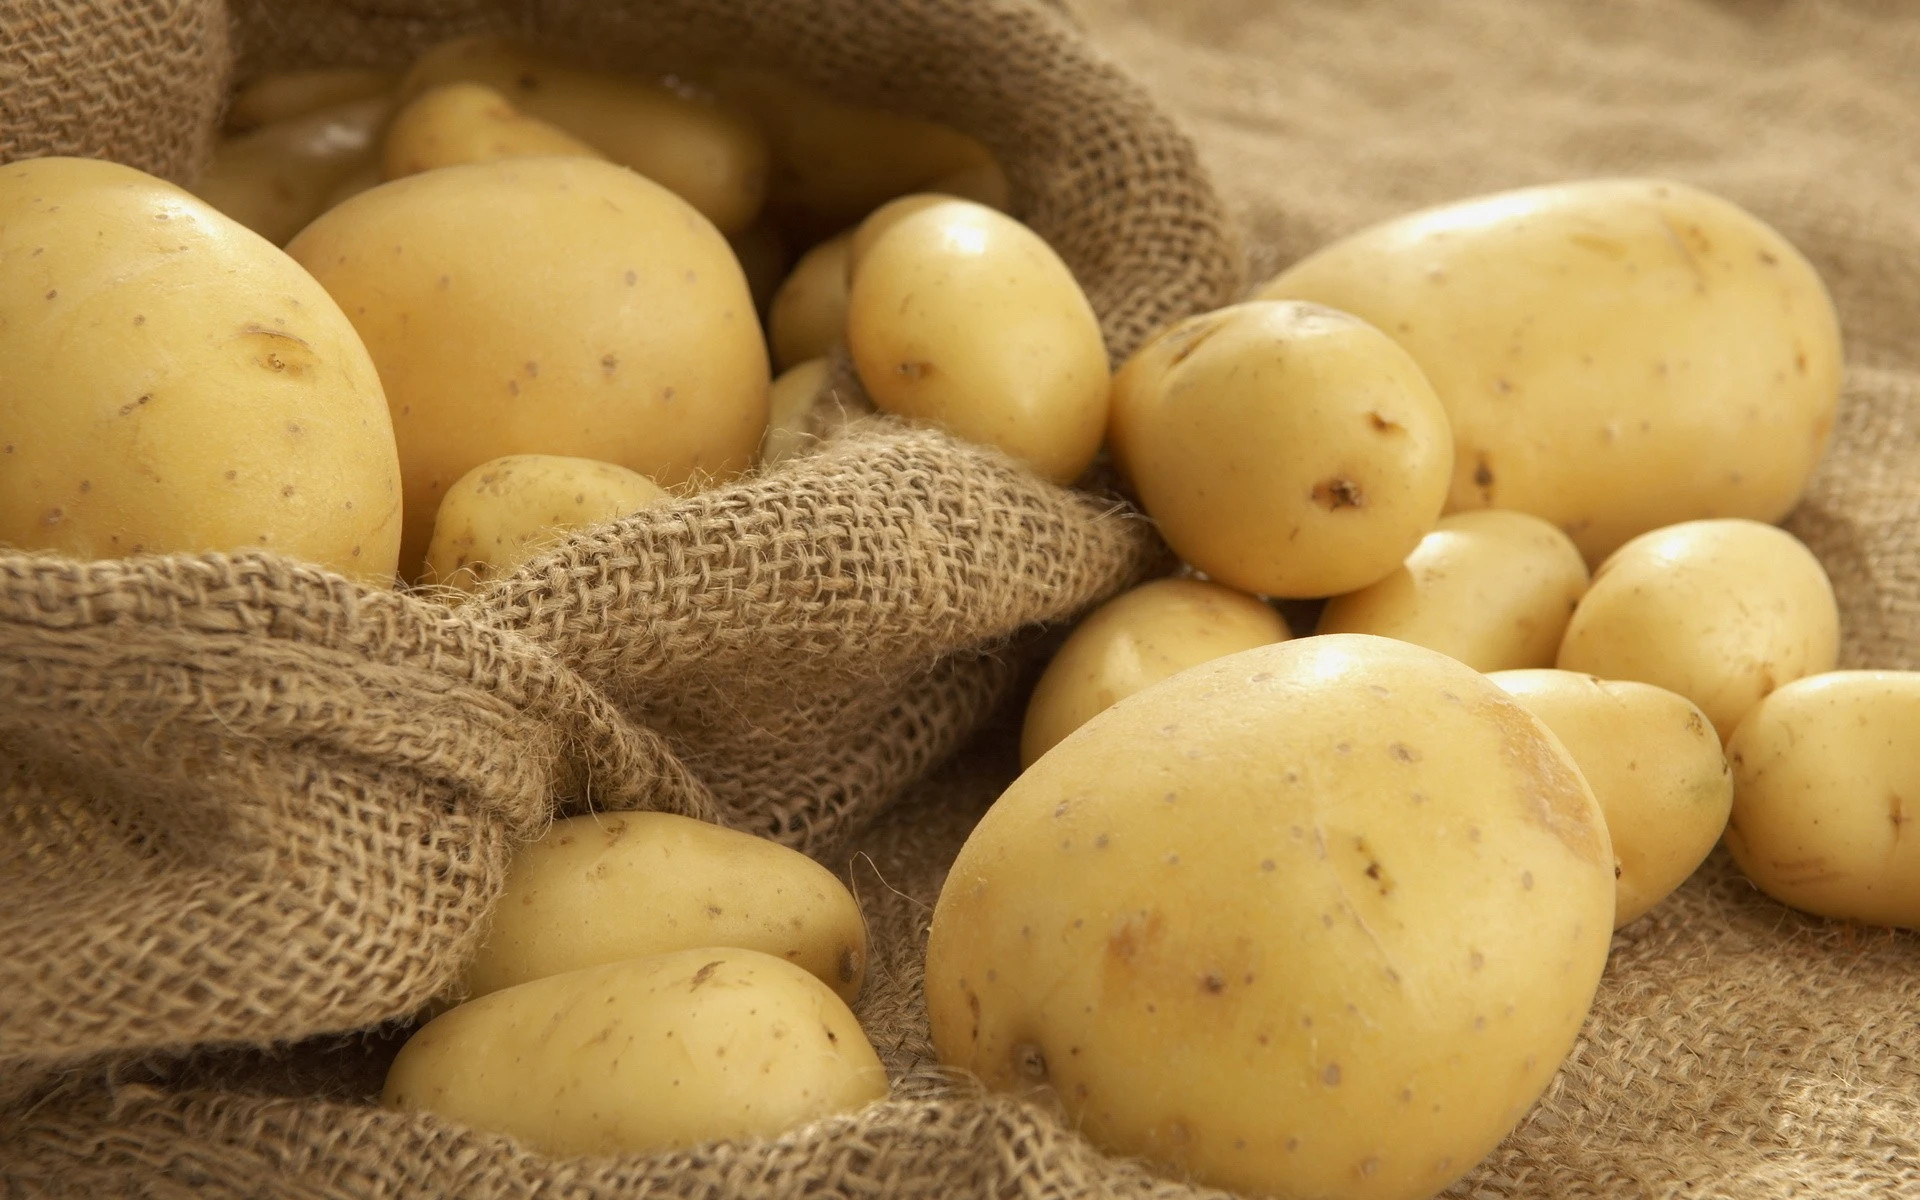 Trong khoai tây chứa chất solanum giúp tẩy trắng, đánh bay các vết nấm mốc